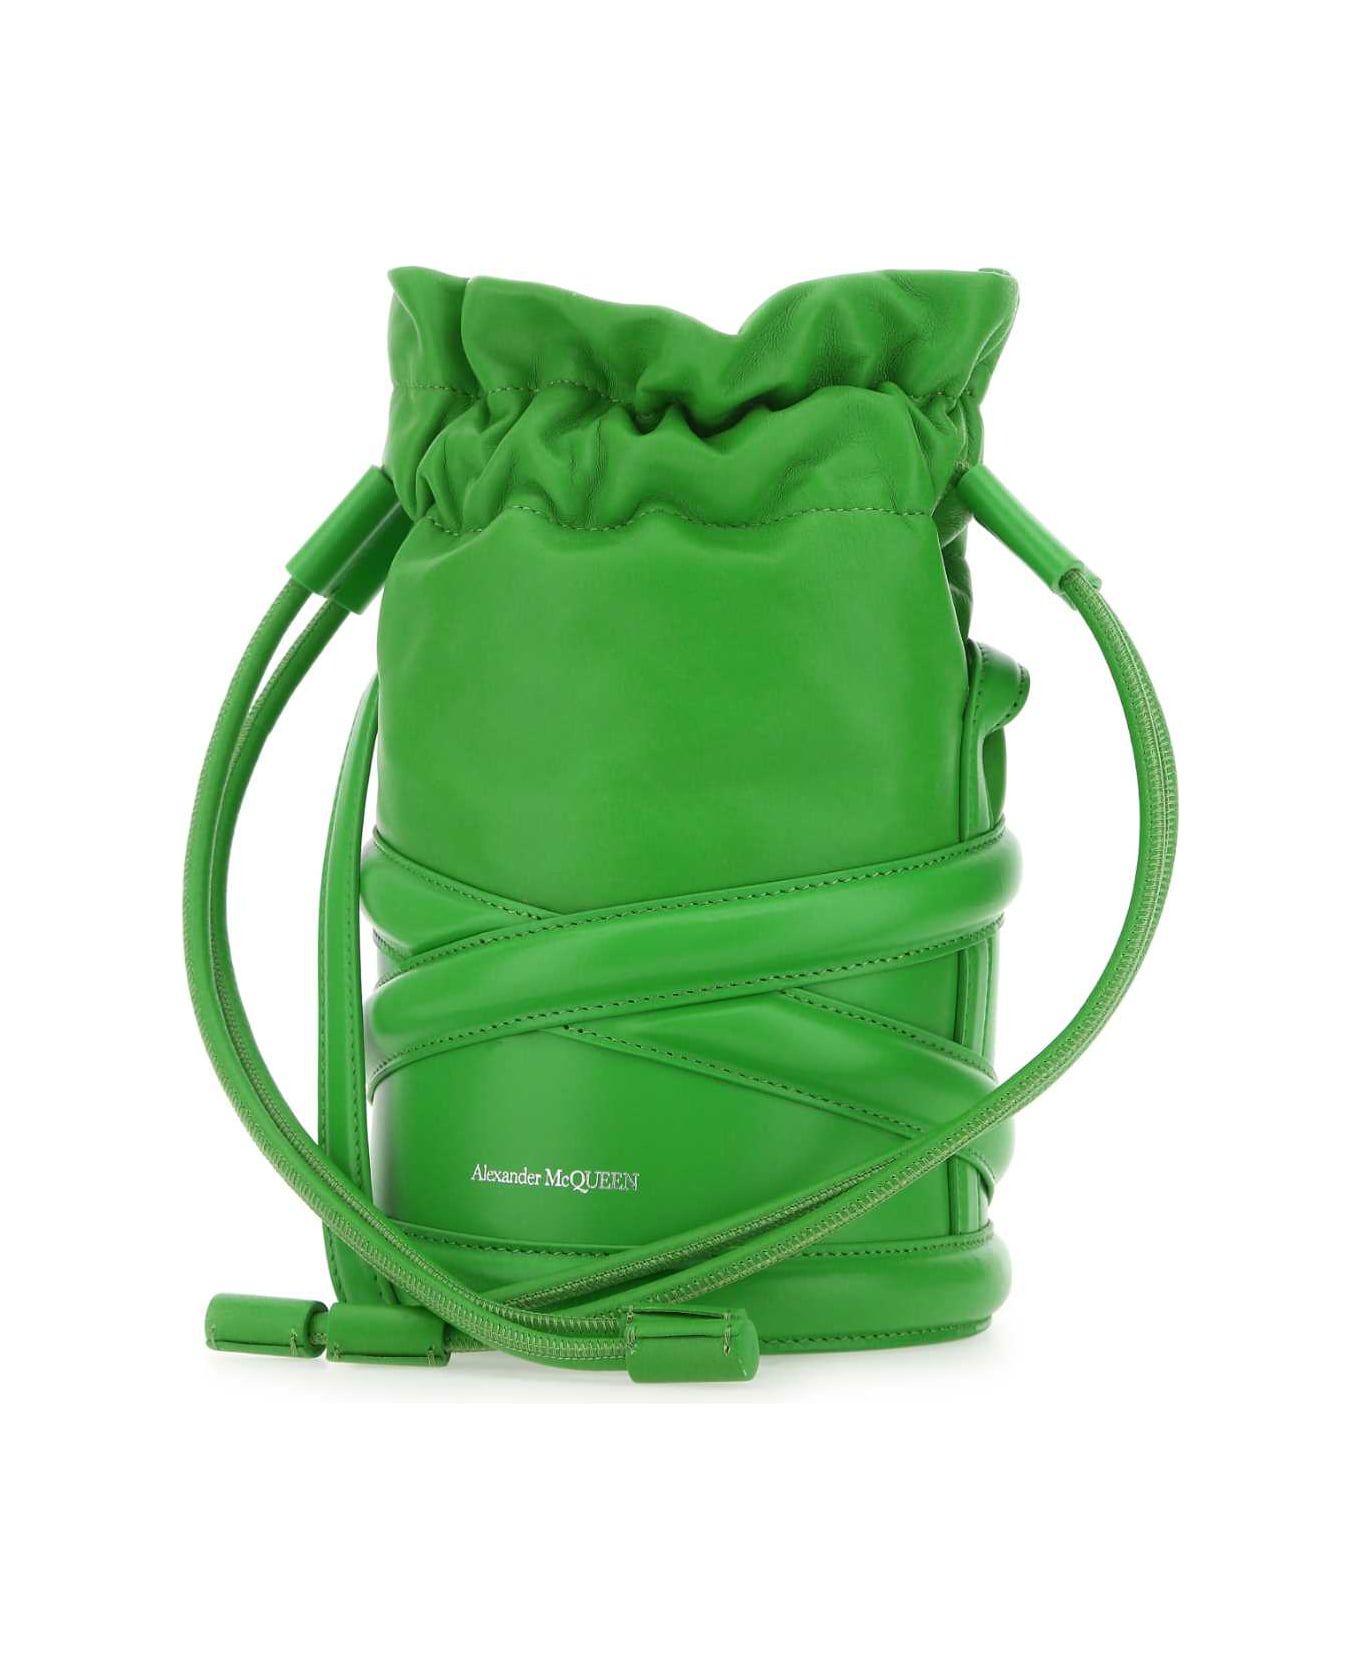 Alexander McQueen Grass Green Leather Bucket Bag - 3800